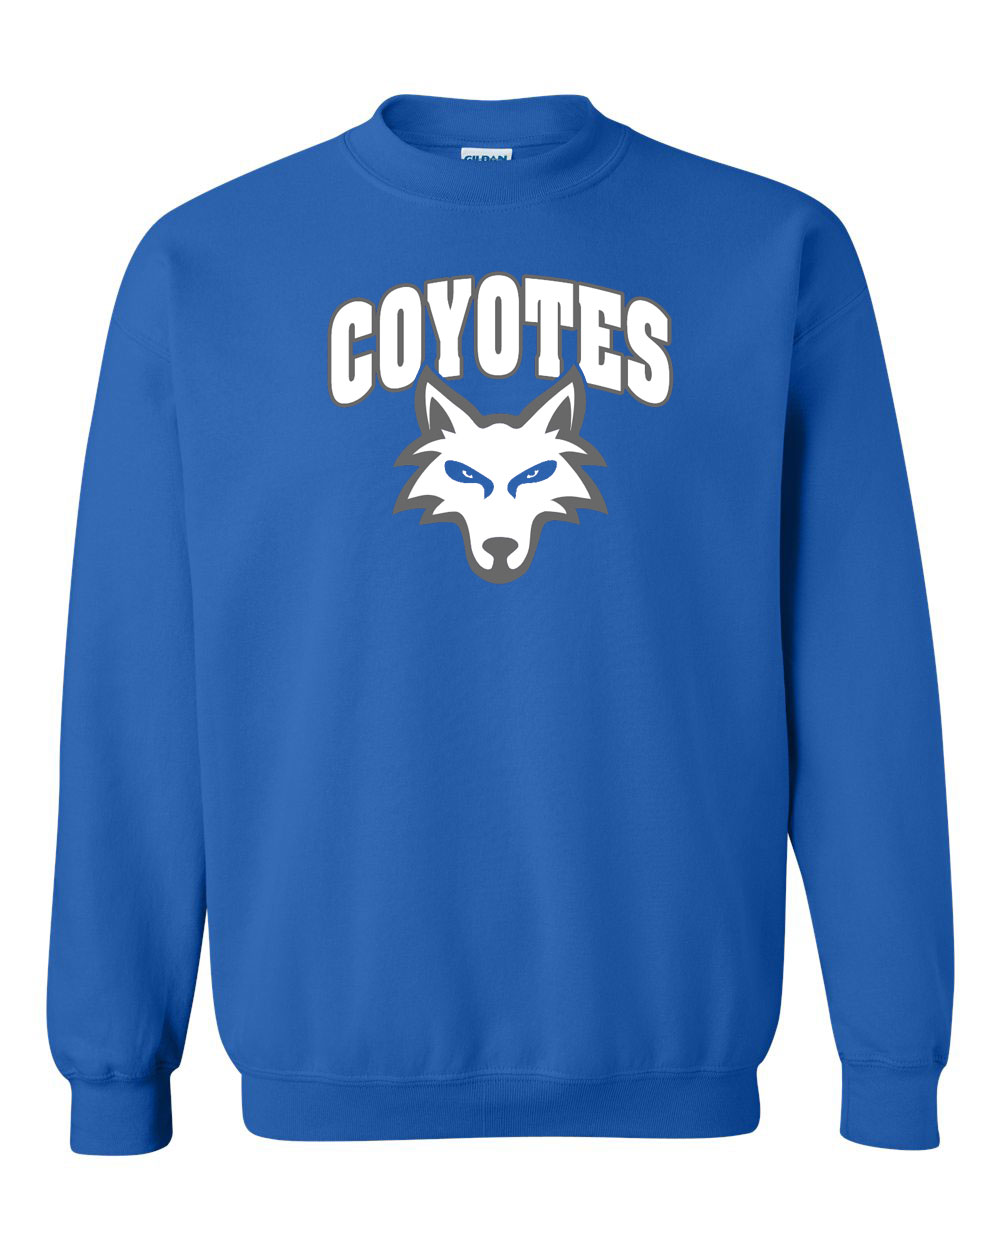 Paris Coyotes | Salt River Shirt Company